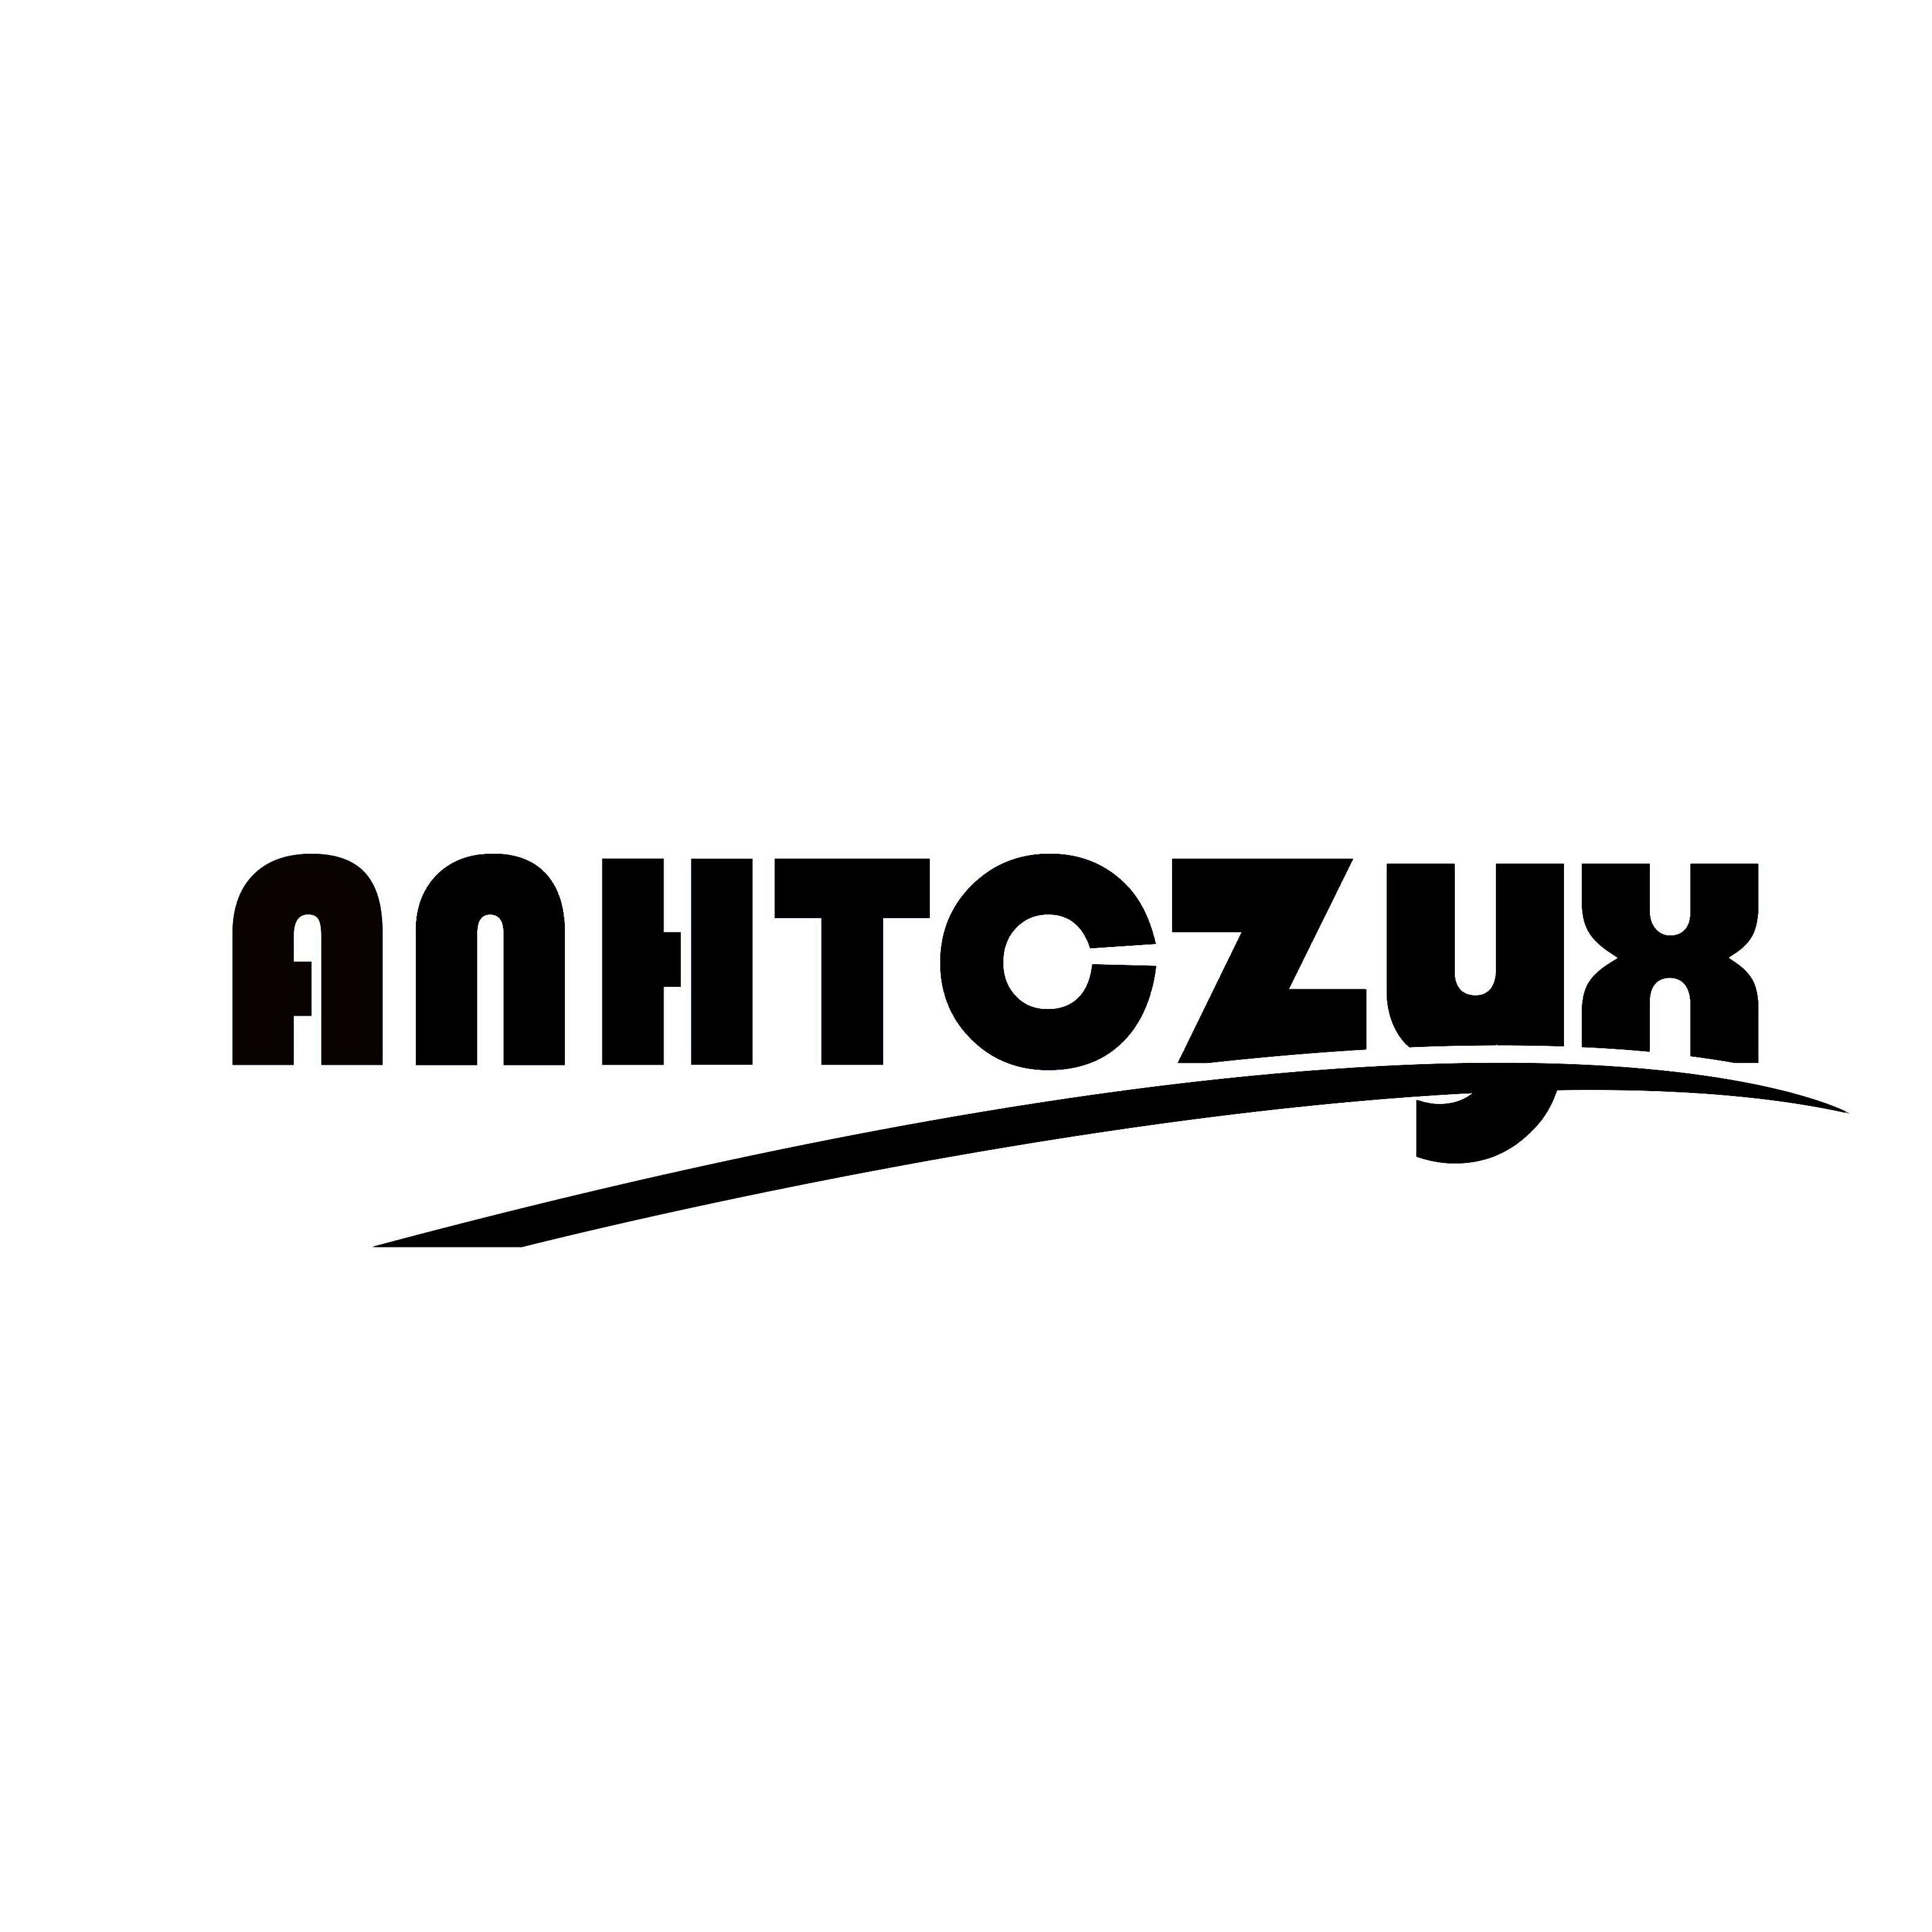 ANHTCZYX